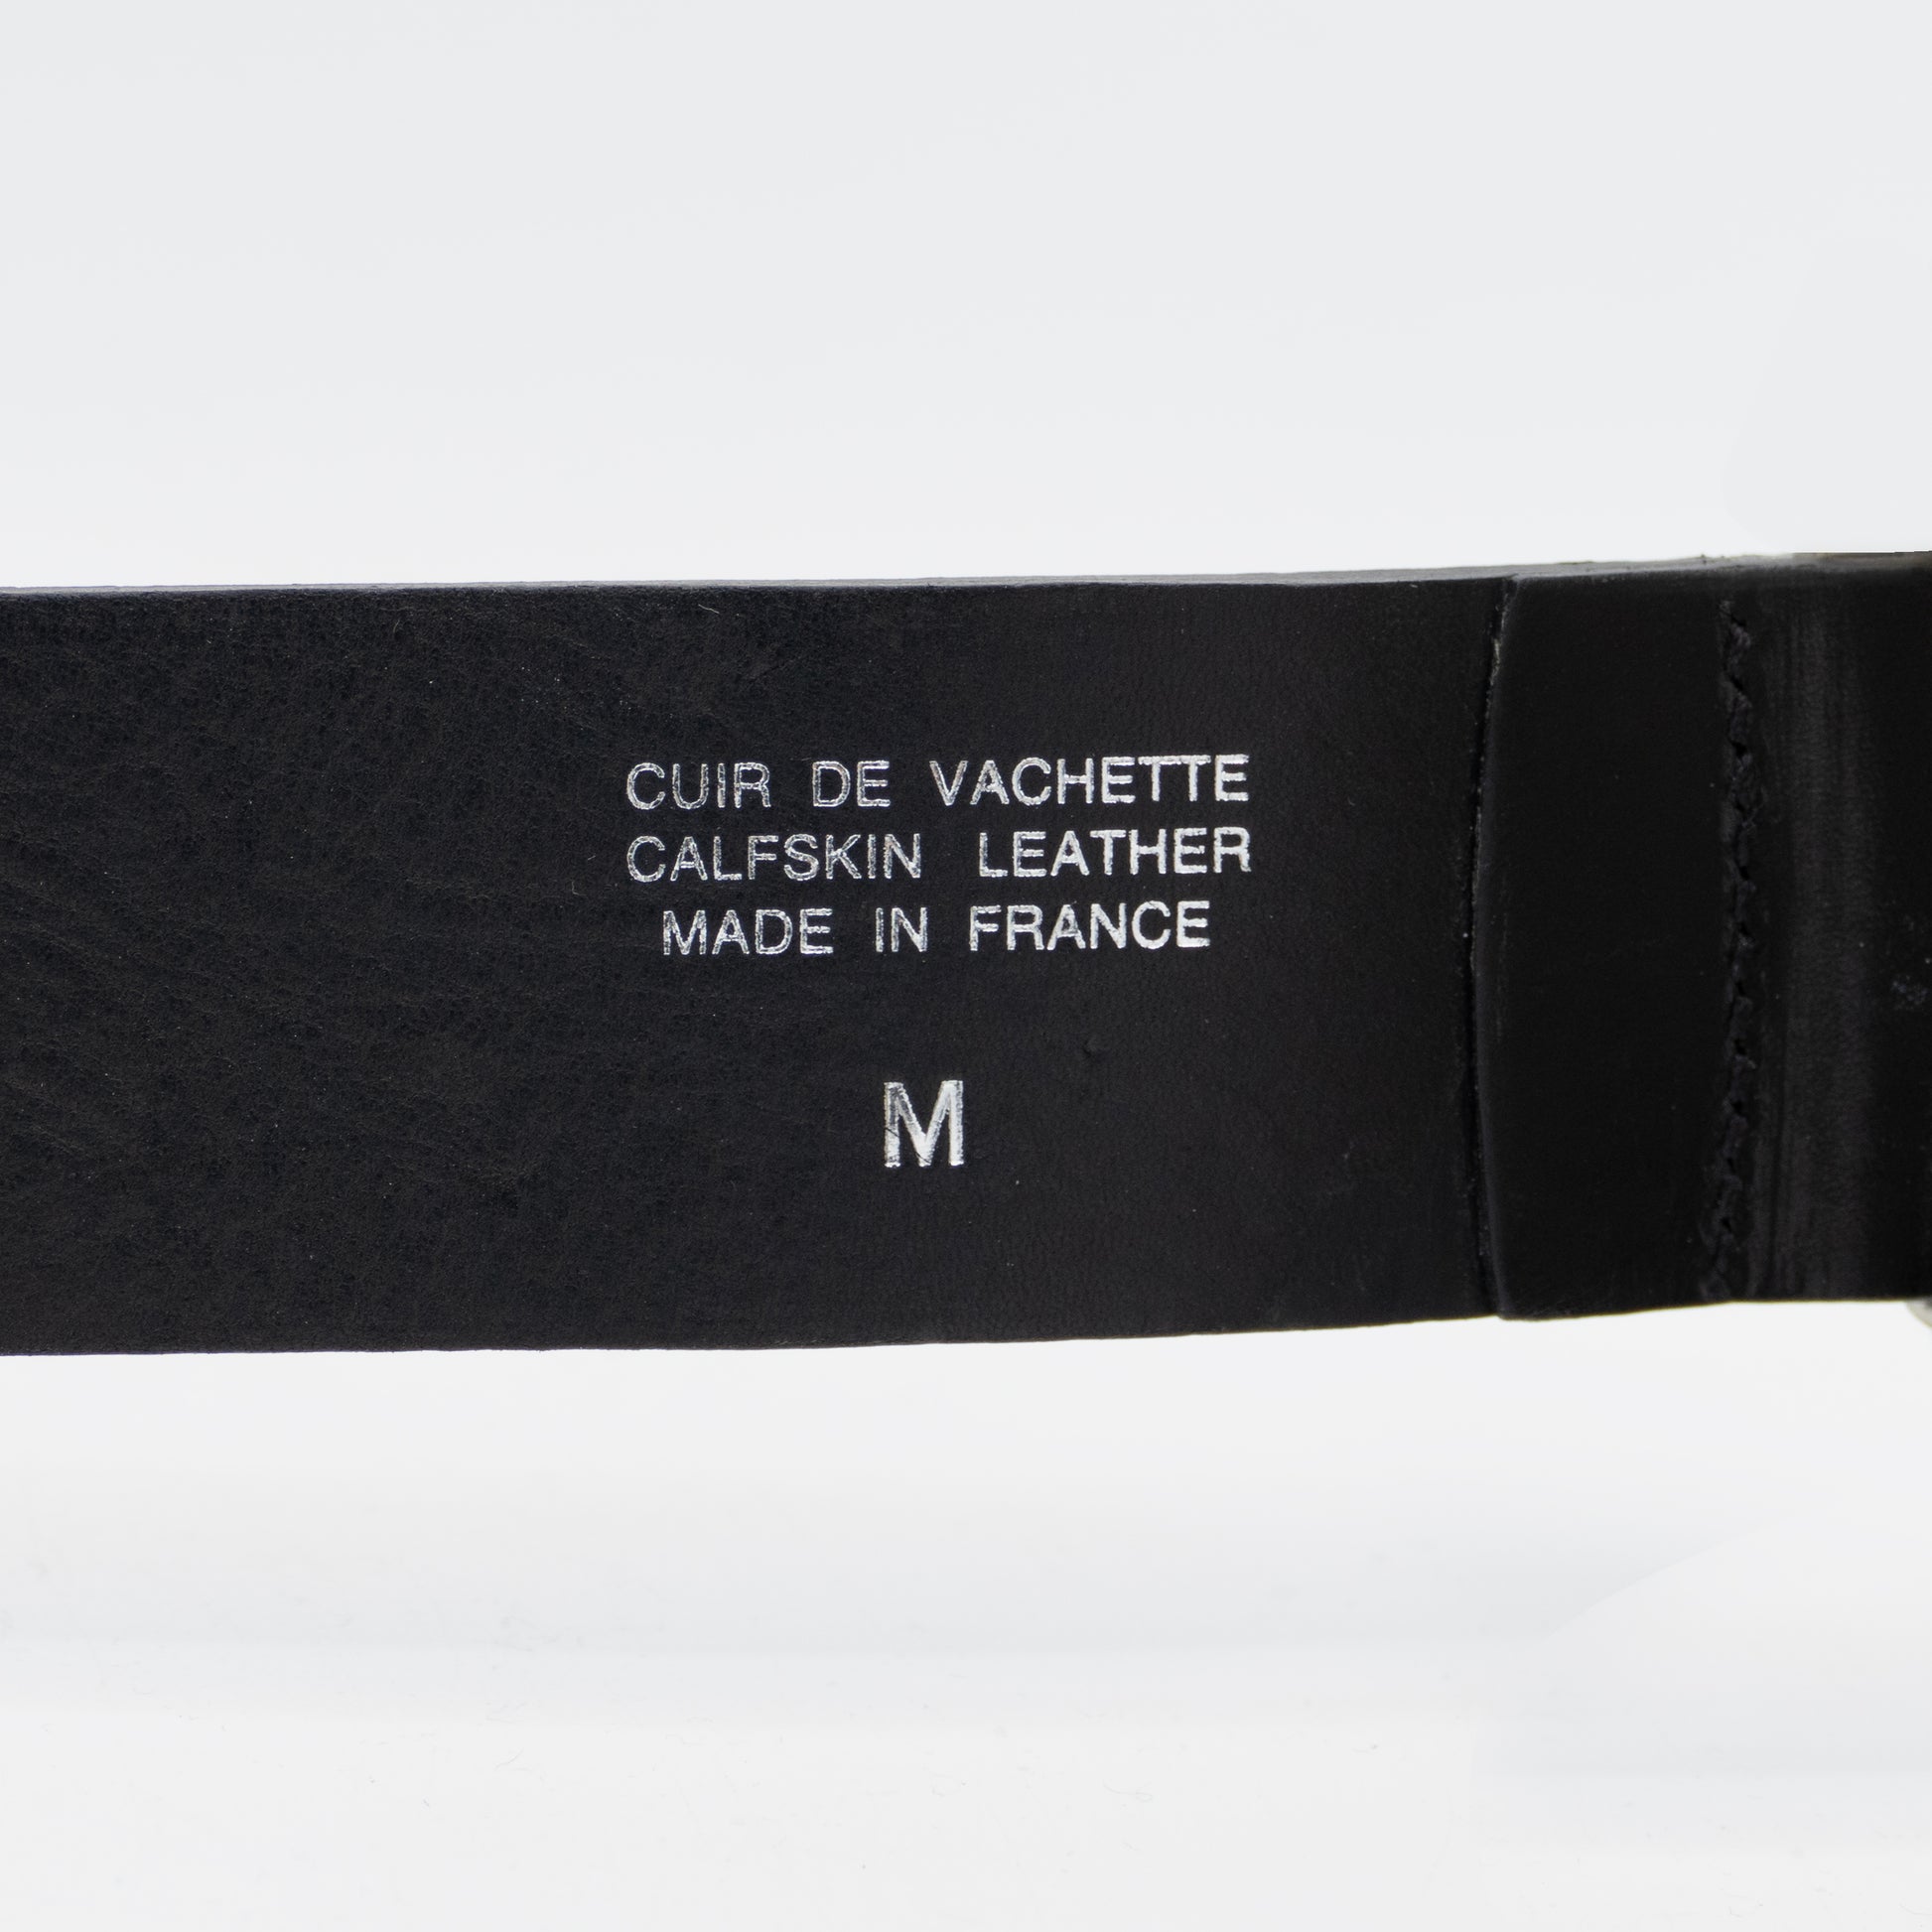 Belt details stamped on leather strap